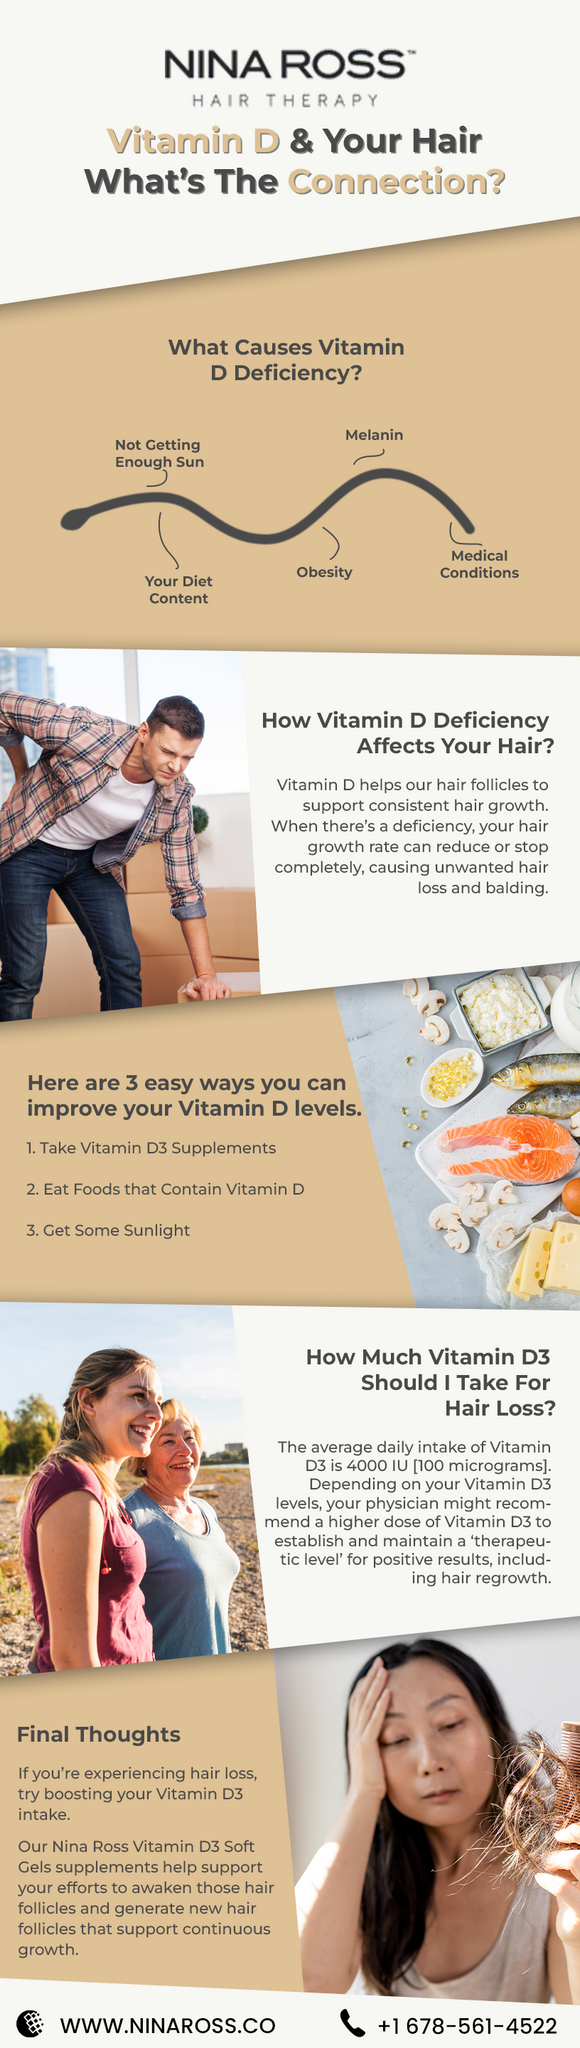 Vitamin D Deficiency and Hair Loss